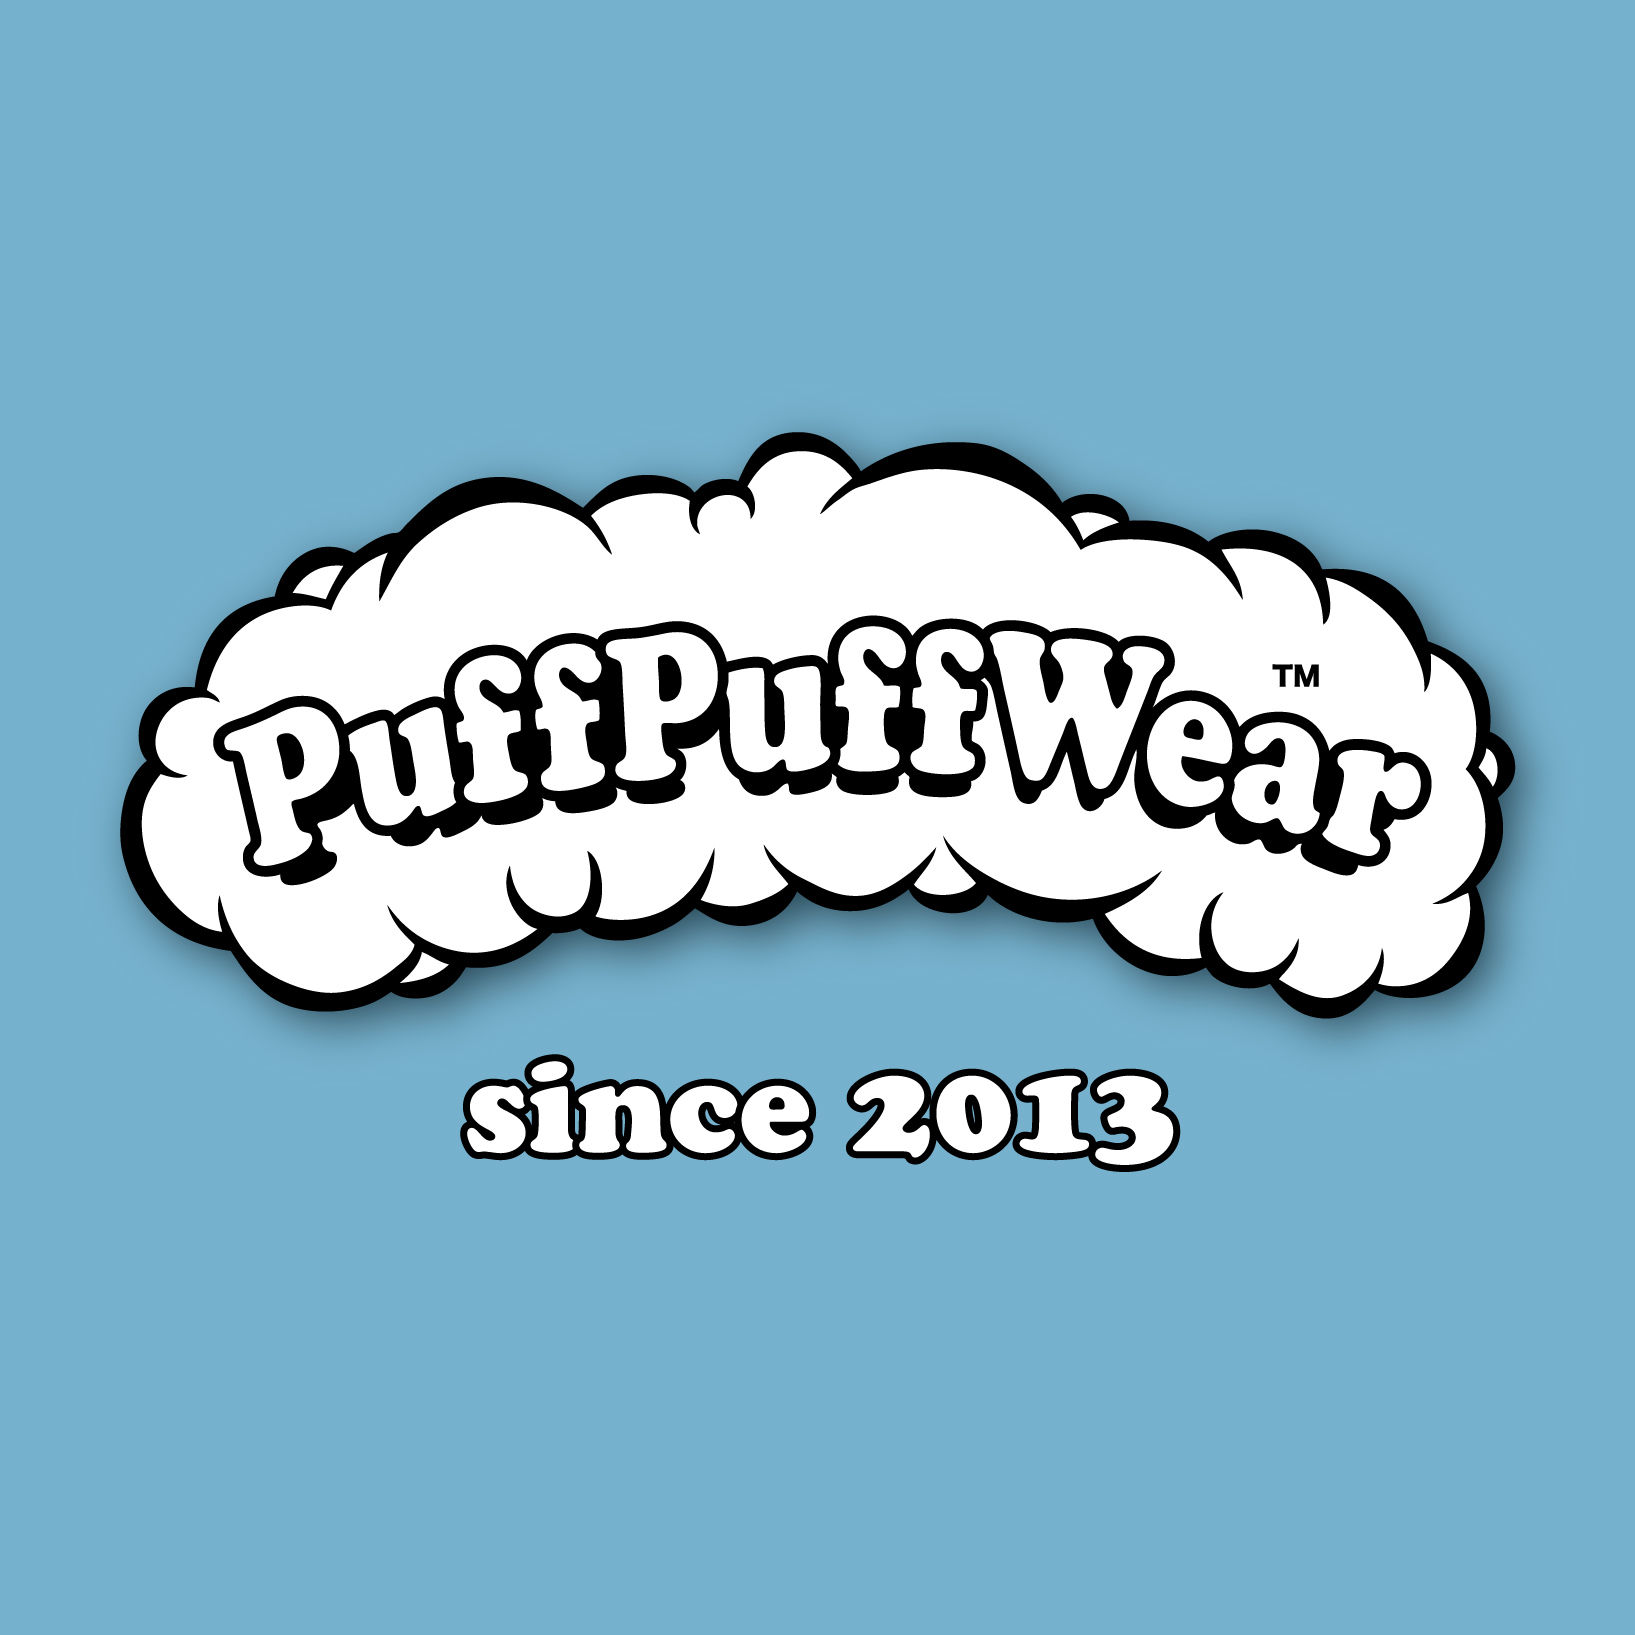 PuffPuffWear™